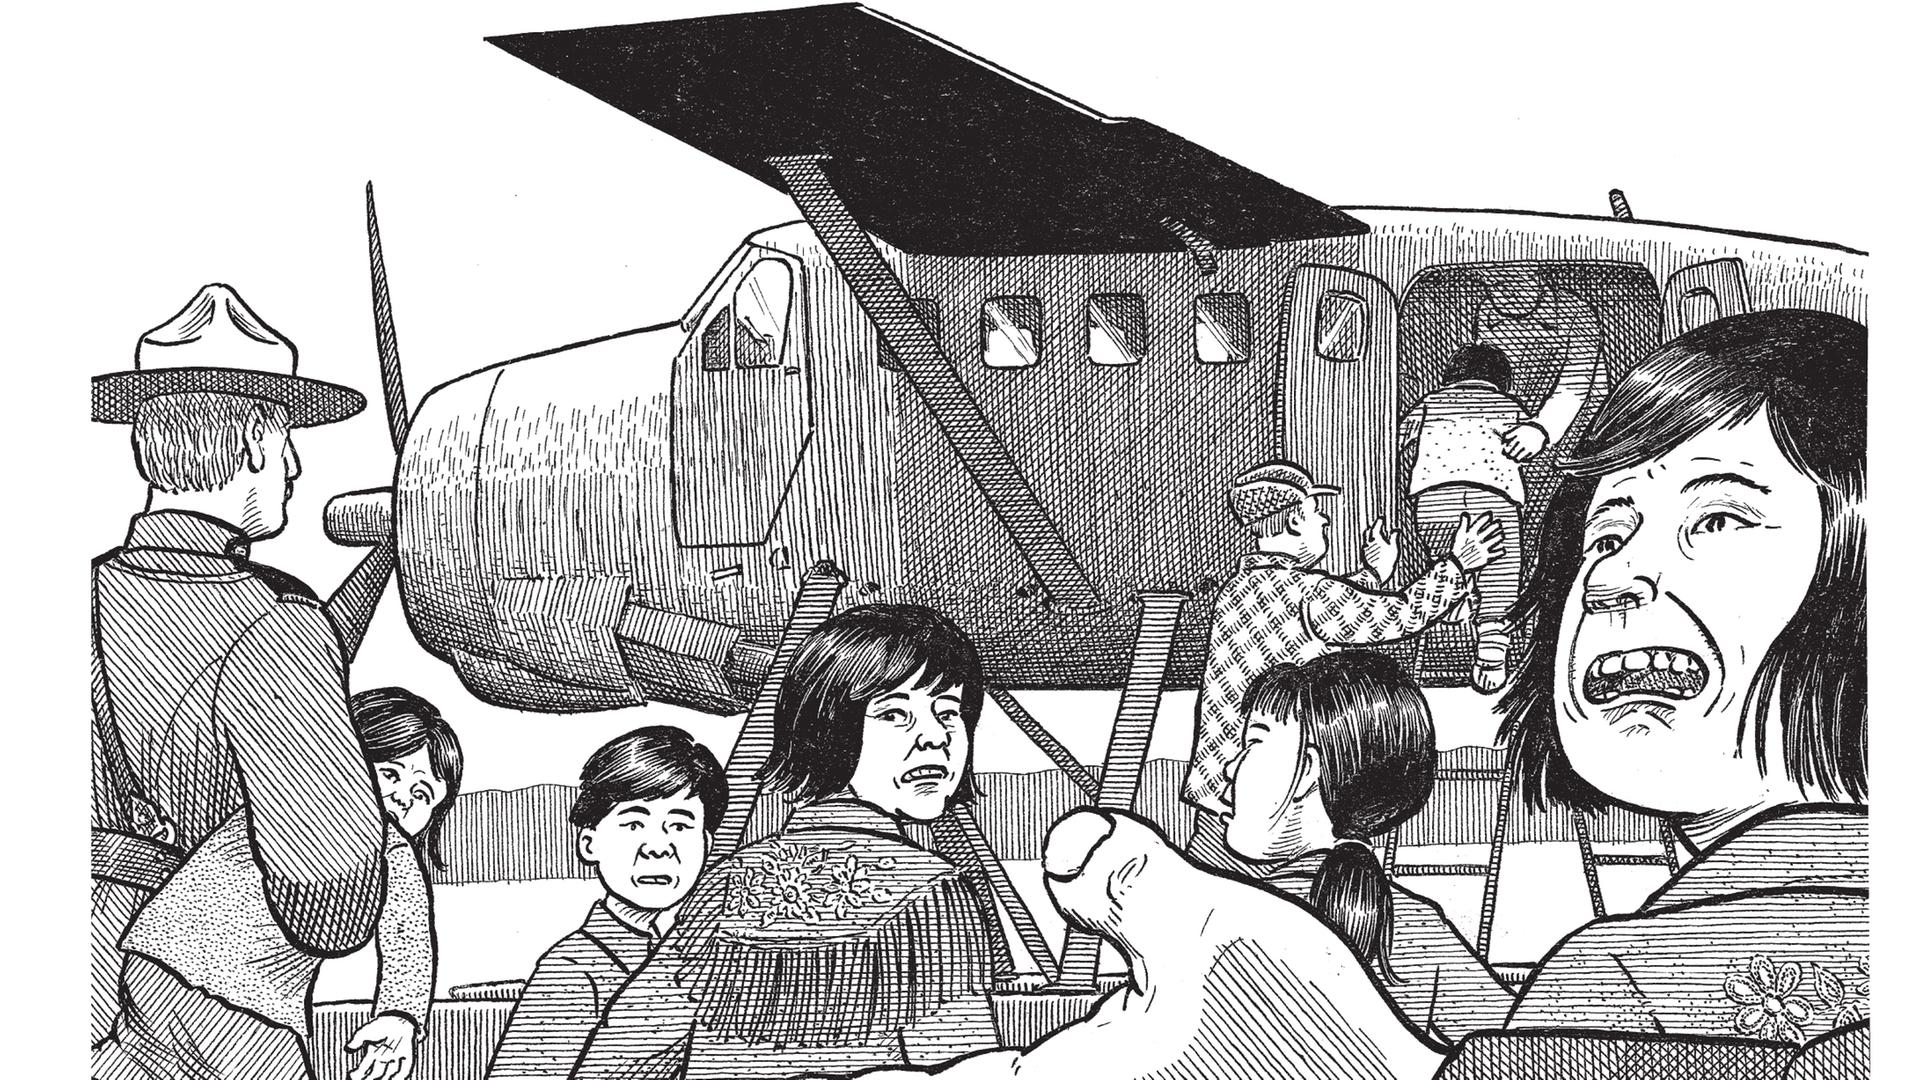 Auf dem Weg in ein neues Leben? Kanadas Regierung schickte die Kinder der indigenen Bevölkerung zur Schule – auch, um Einfluss zu gewinnen. Auf dem Bild winken Ranger die Kinder zu einem Wasserflugzeug. 